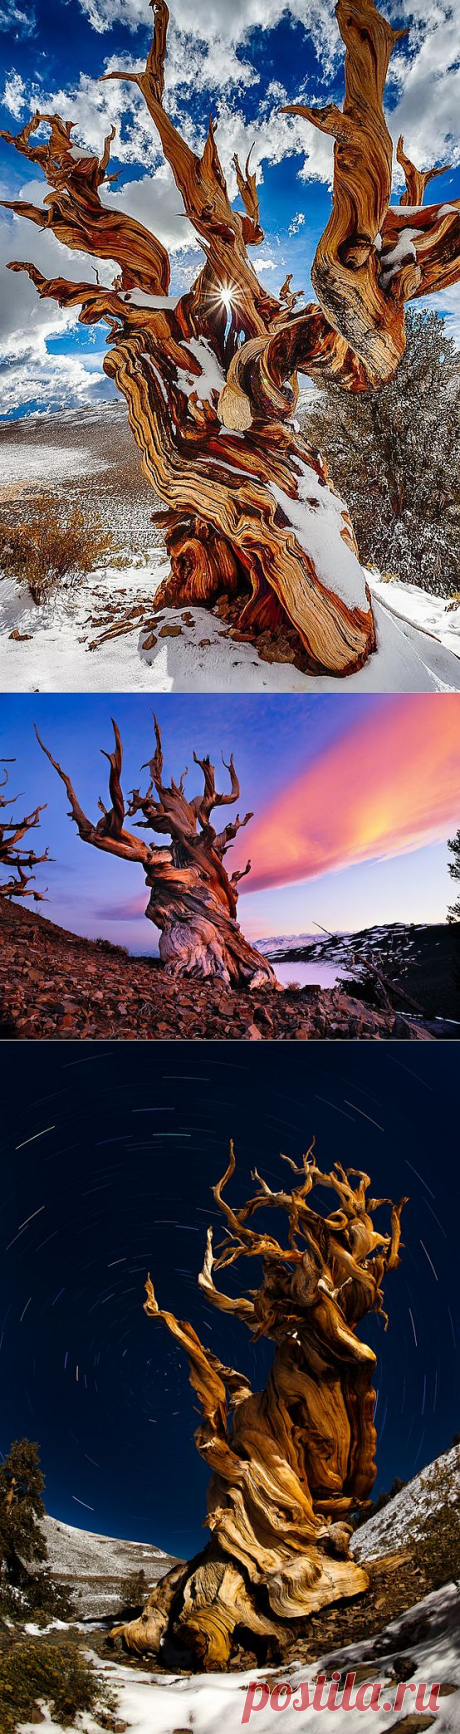 ФотоТелеграф » Впечатляющие фотографии самых старых деревьев на Земле